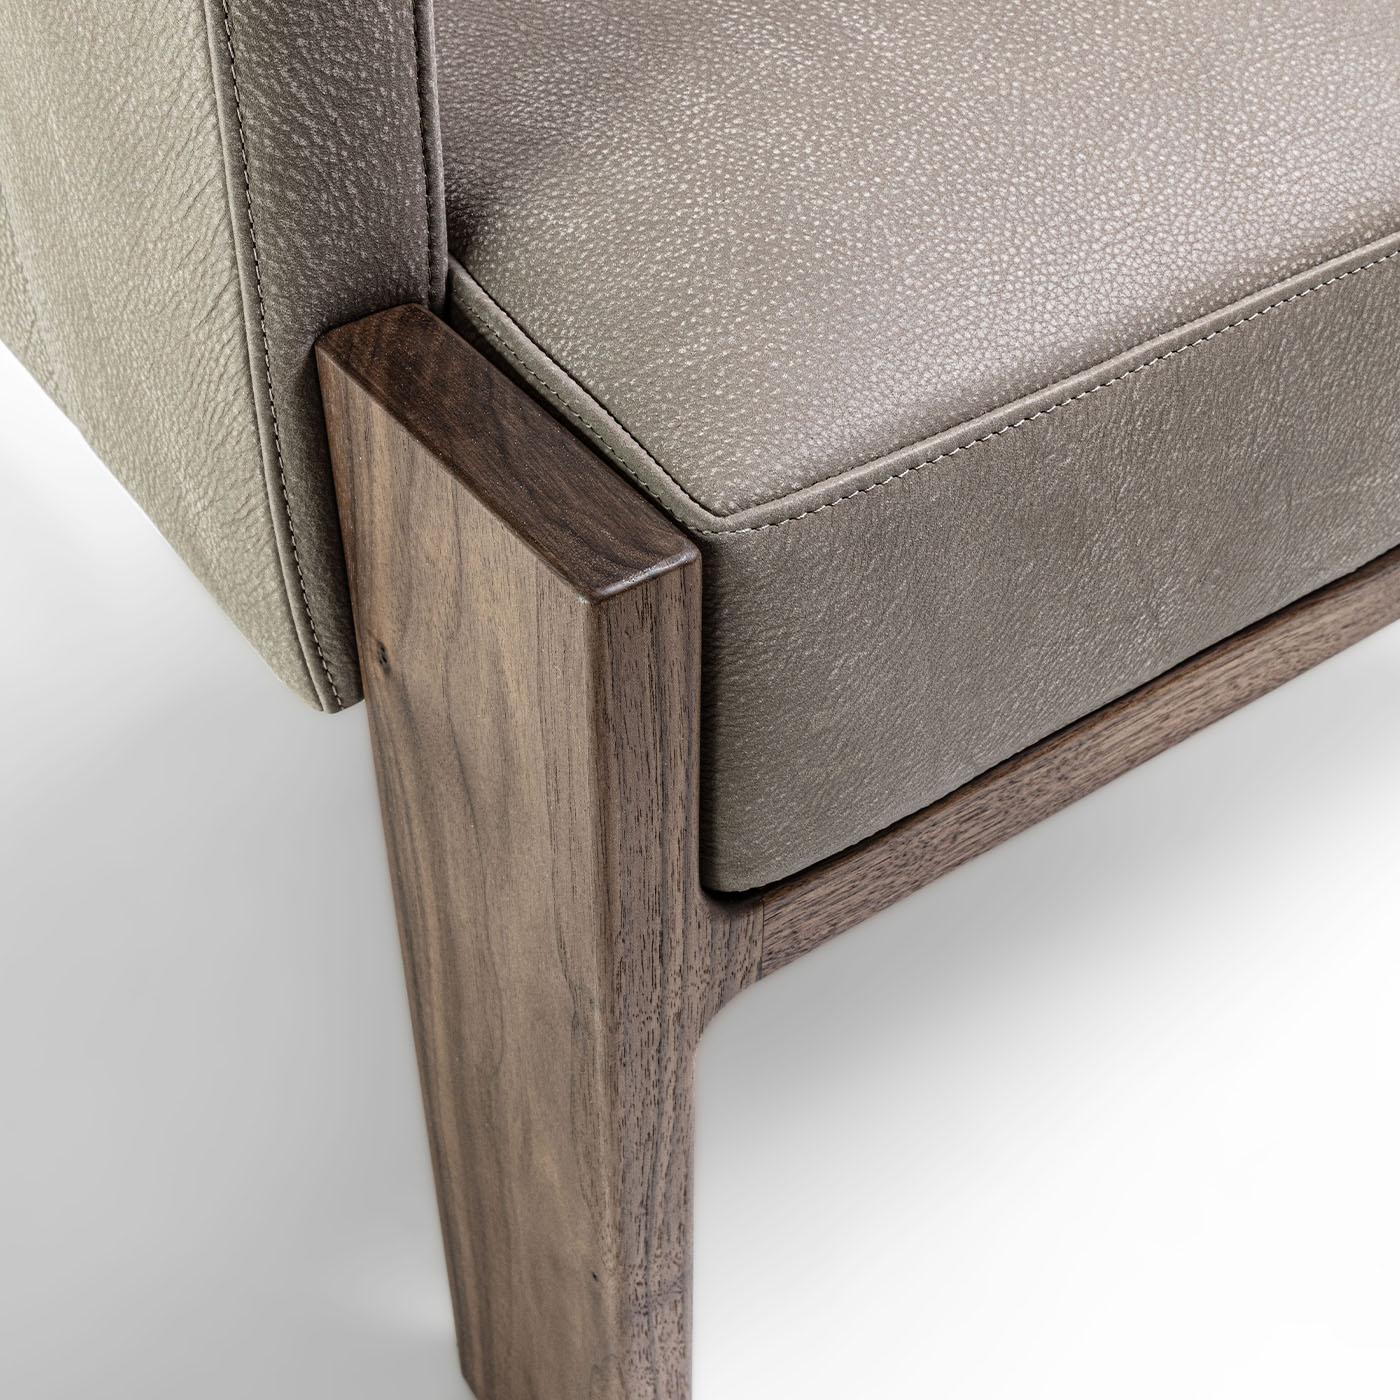 Ein massives Gestell aus Canaletto-Nussbaum mit strengen Profilen verleiht diesem Sessel seine unverwechselbare skulpturale Ausstrahlung. Für höchsten Komfort sorgt die gepolsterte Schale, die von edlem, taupefarbenem Leder umhüllt wird, das an den